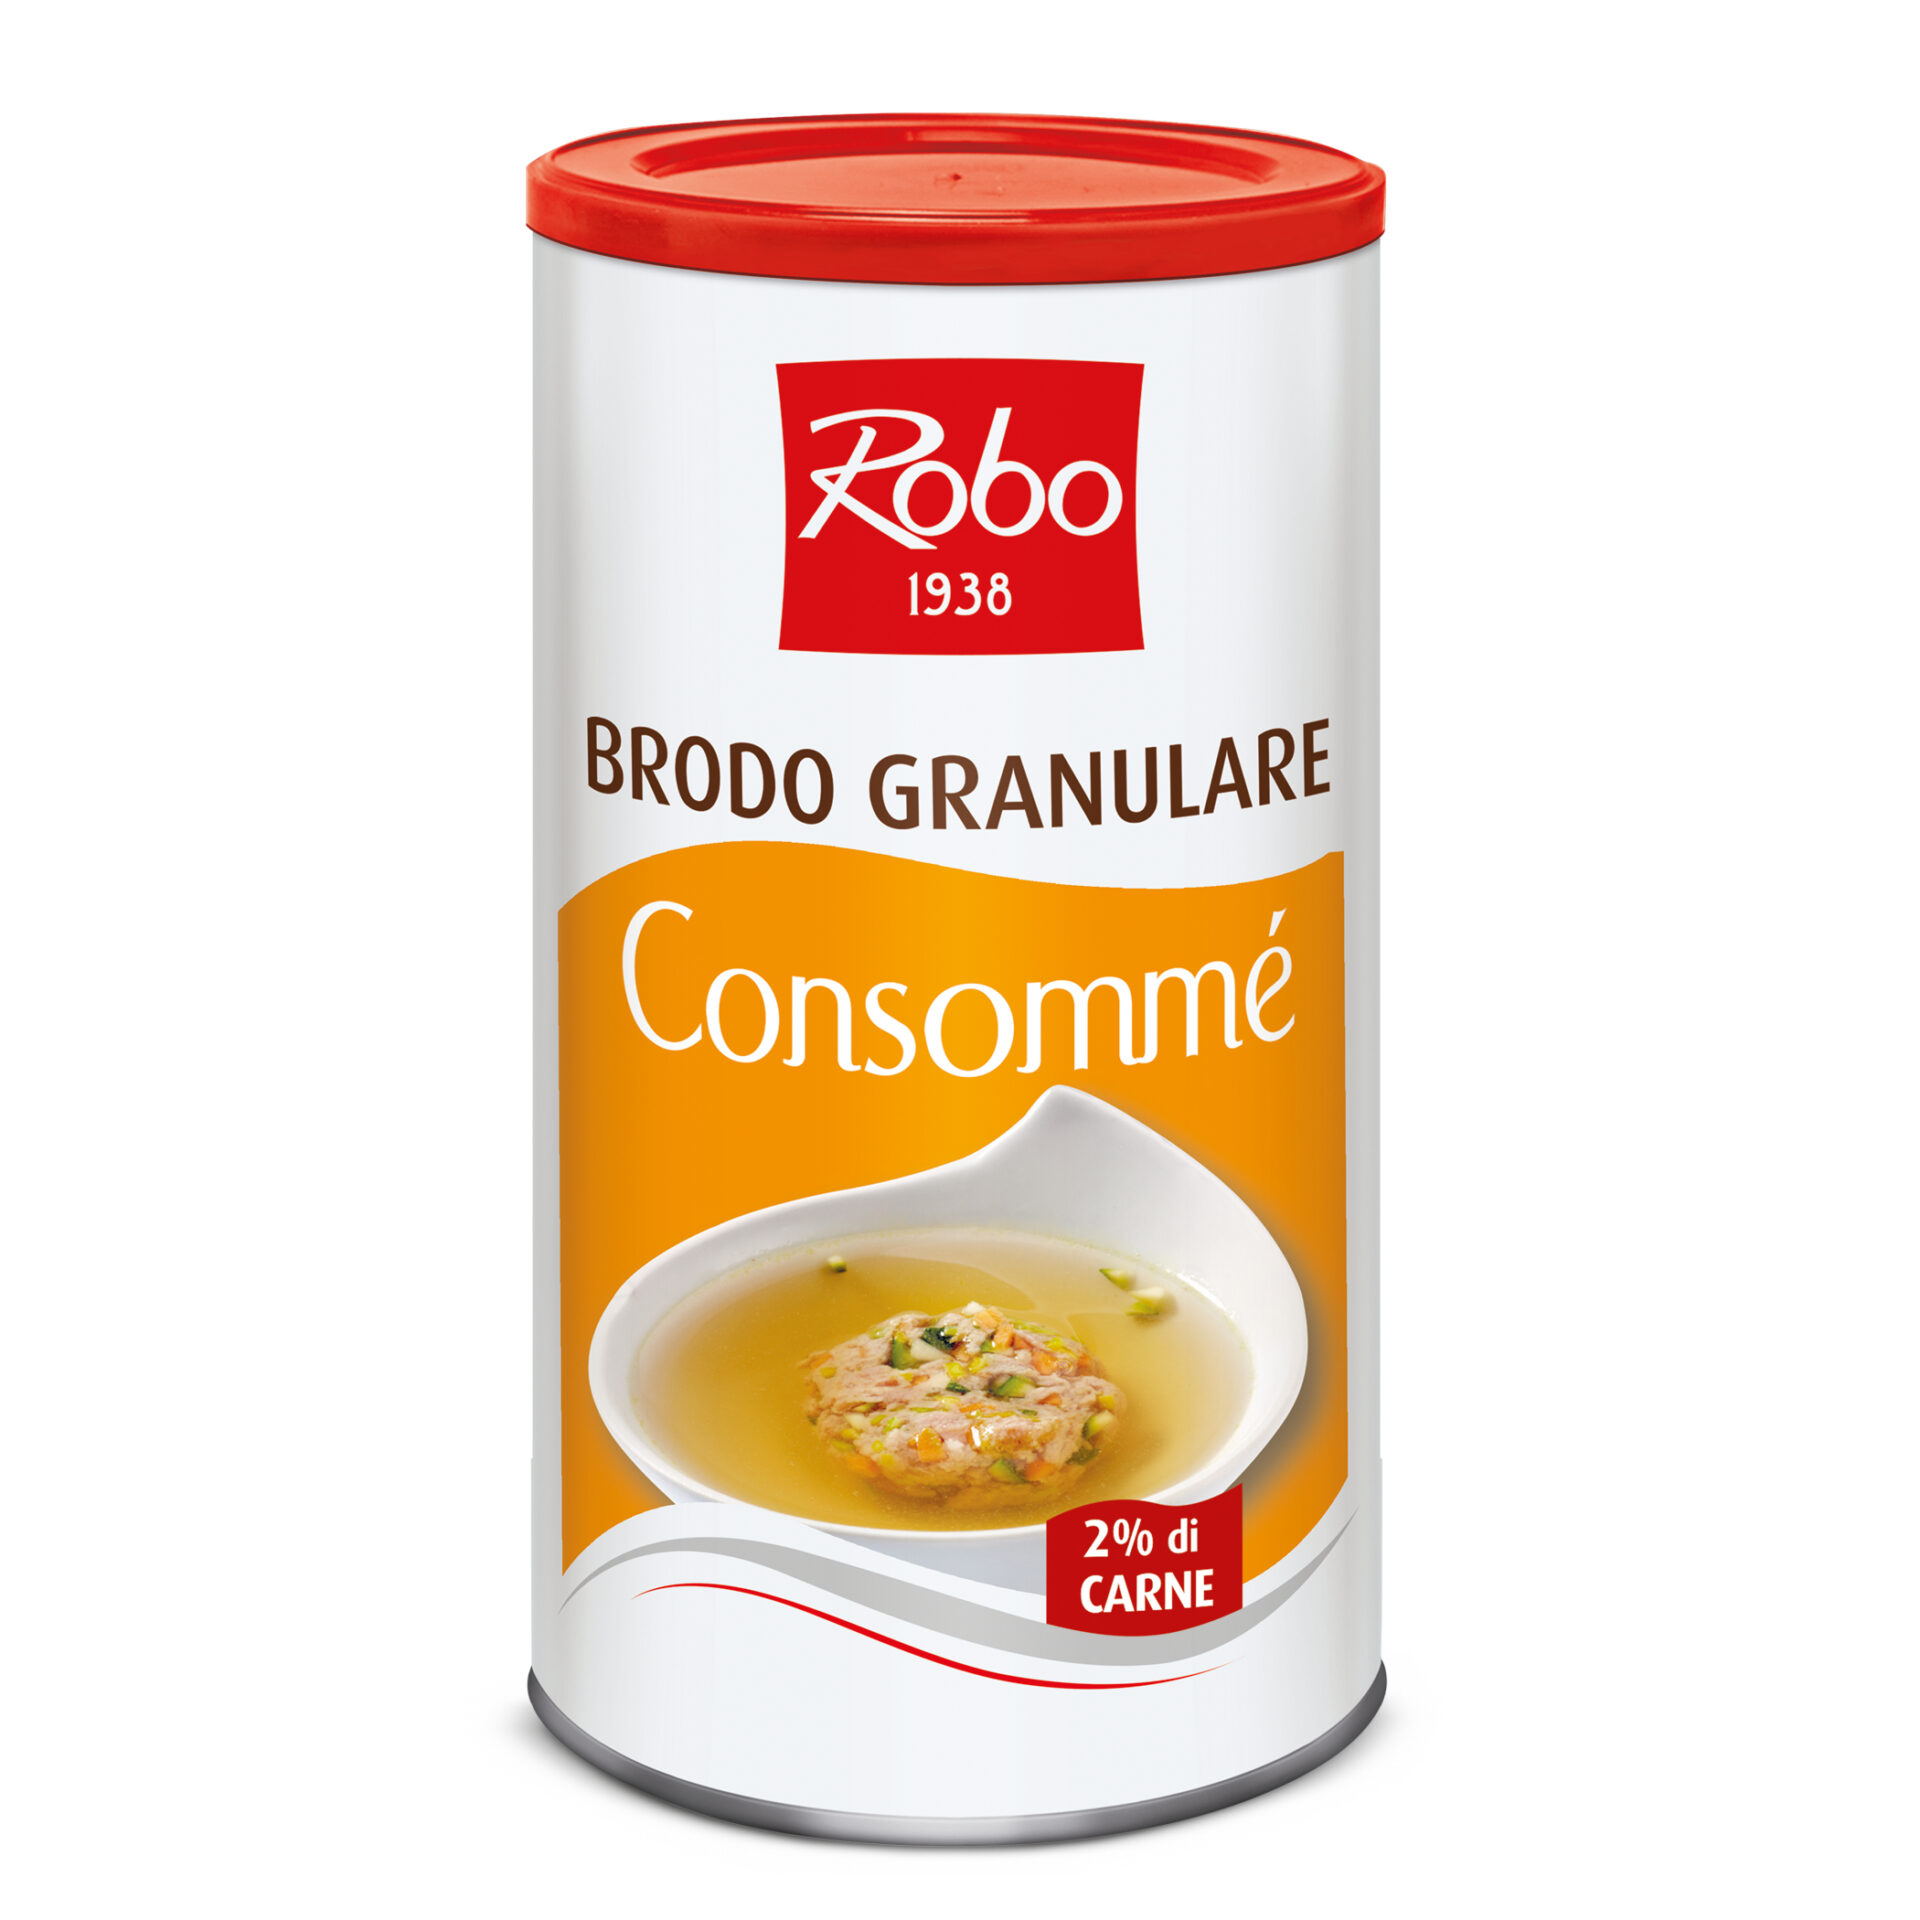 BRODO GRANULARE - Robo - Patrioli Food Srl